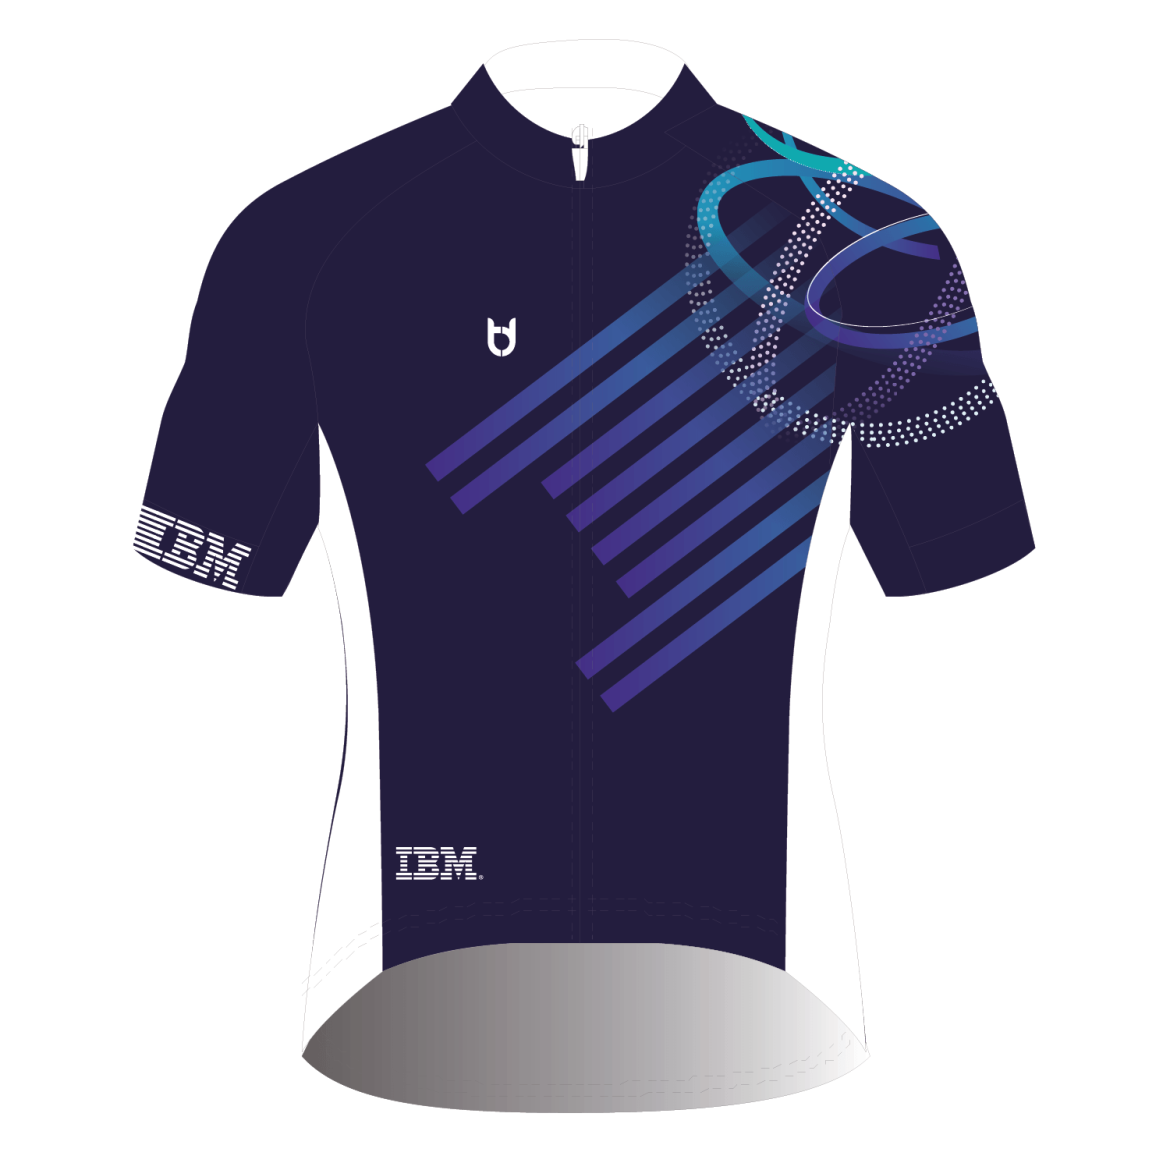 IBM wielershirt voor